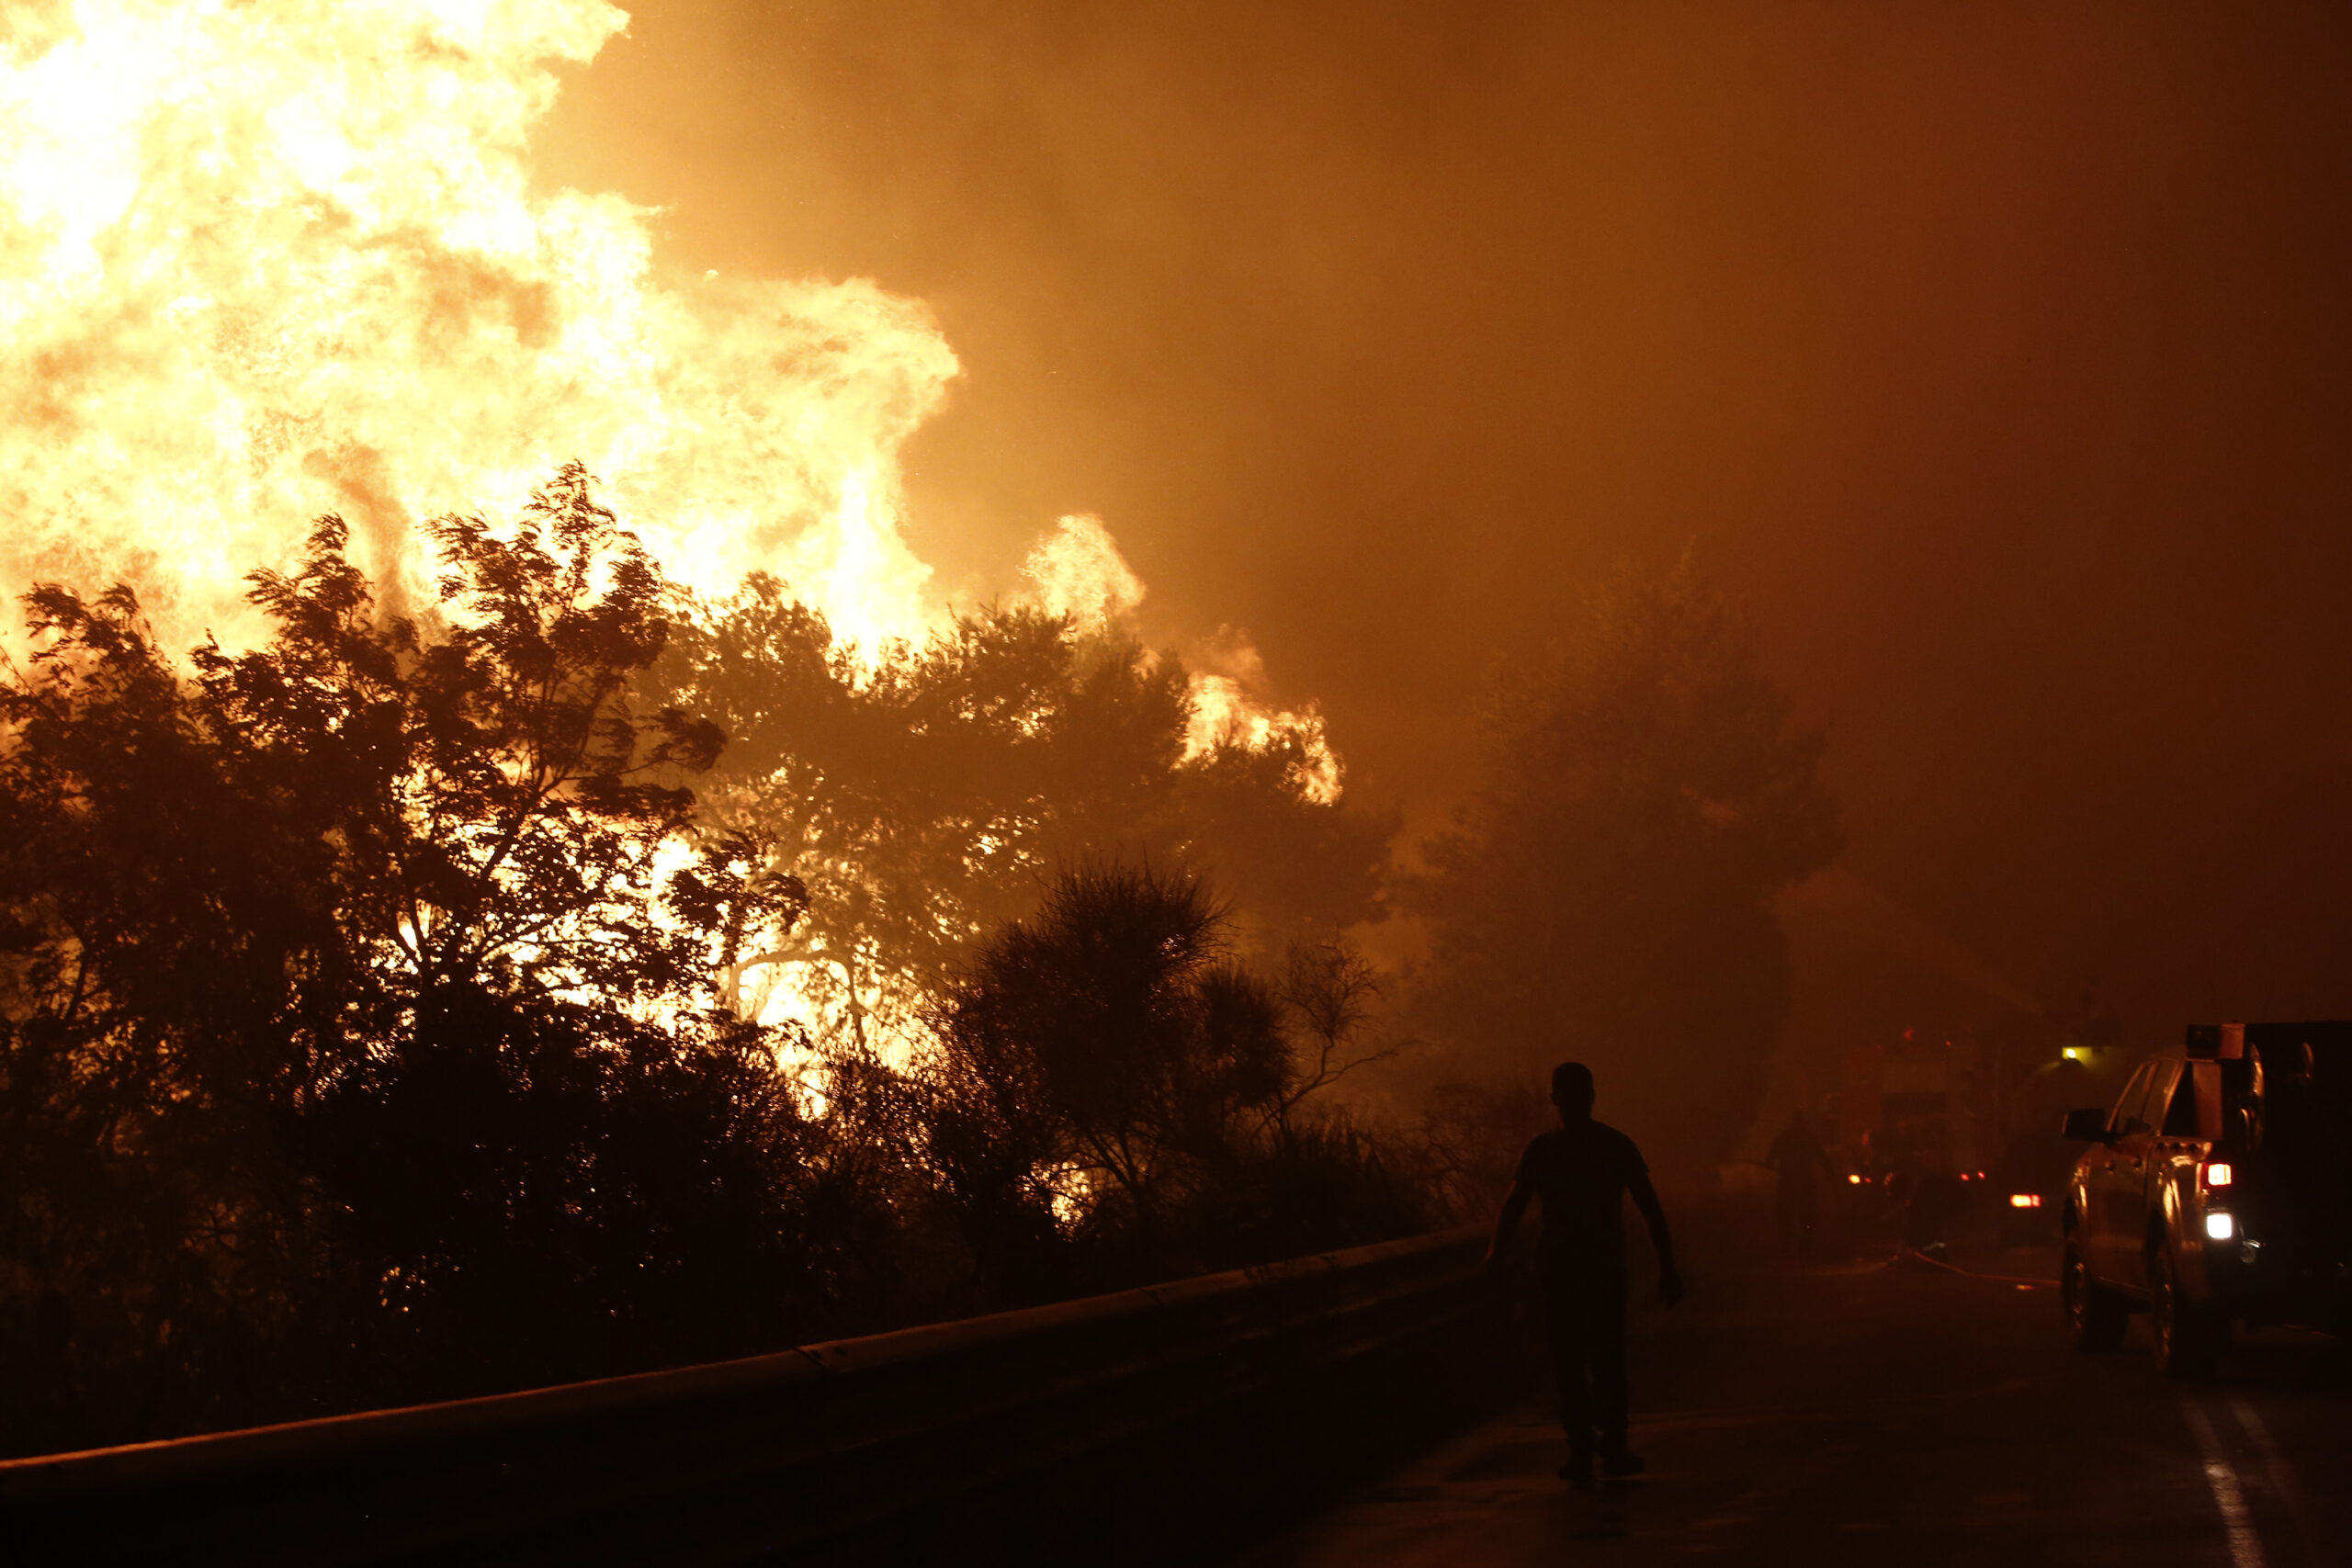 Βαρυμπόμπη: Εκτός ελέγχου η φωτιά που πέρασε την εθνική οδό - Εντολή για εκκένωση σε Καπανδρίτι, Πολυδένδρι και Άγιο Στέφανο